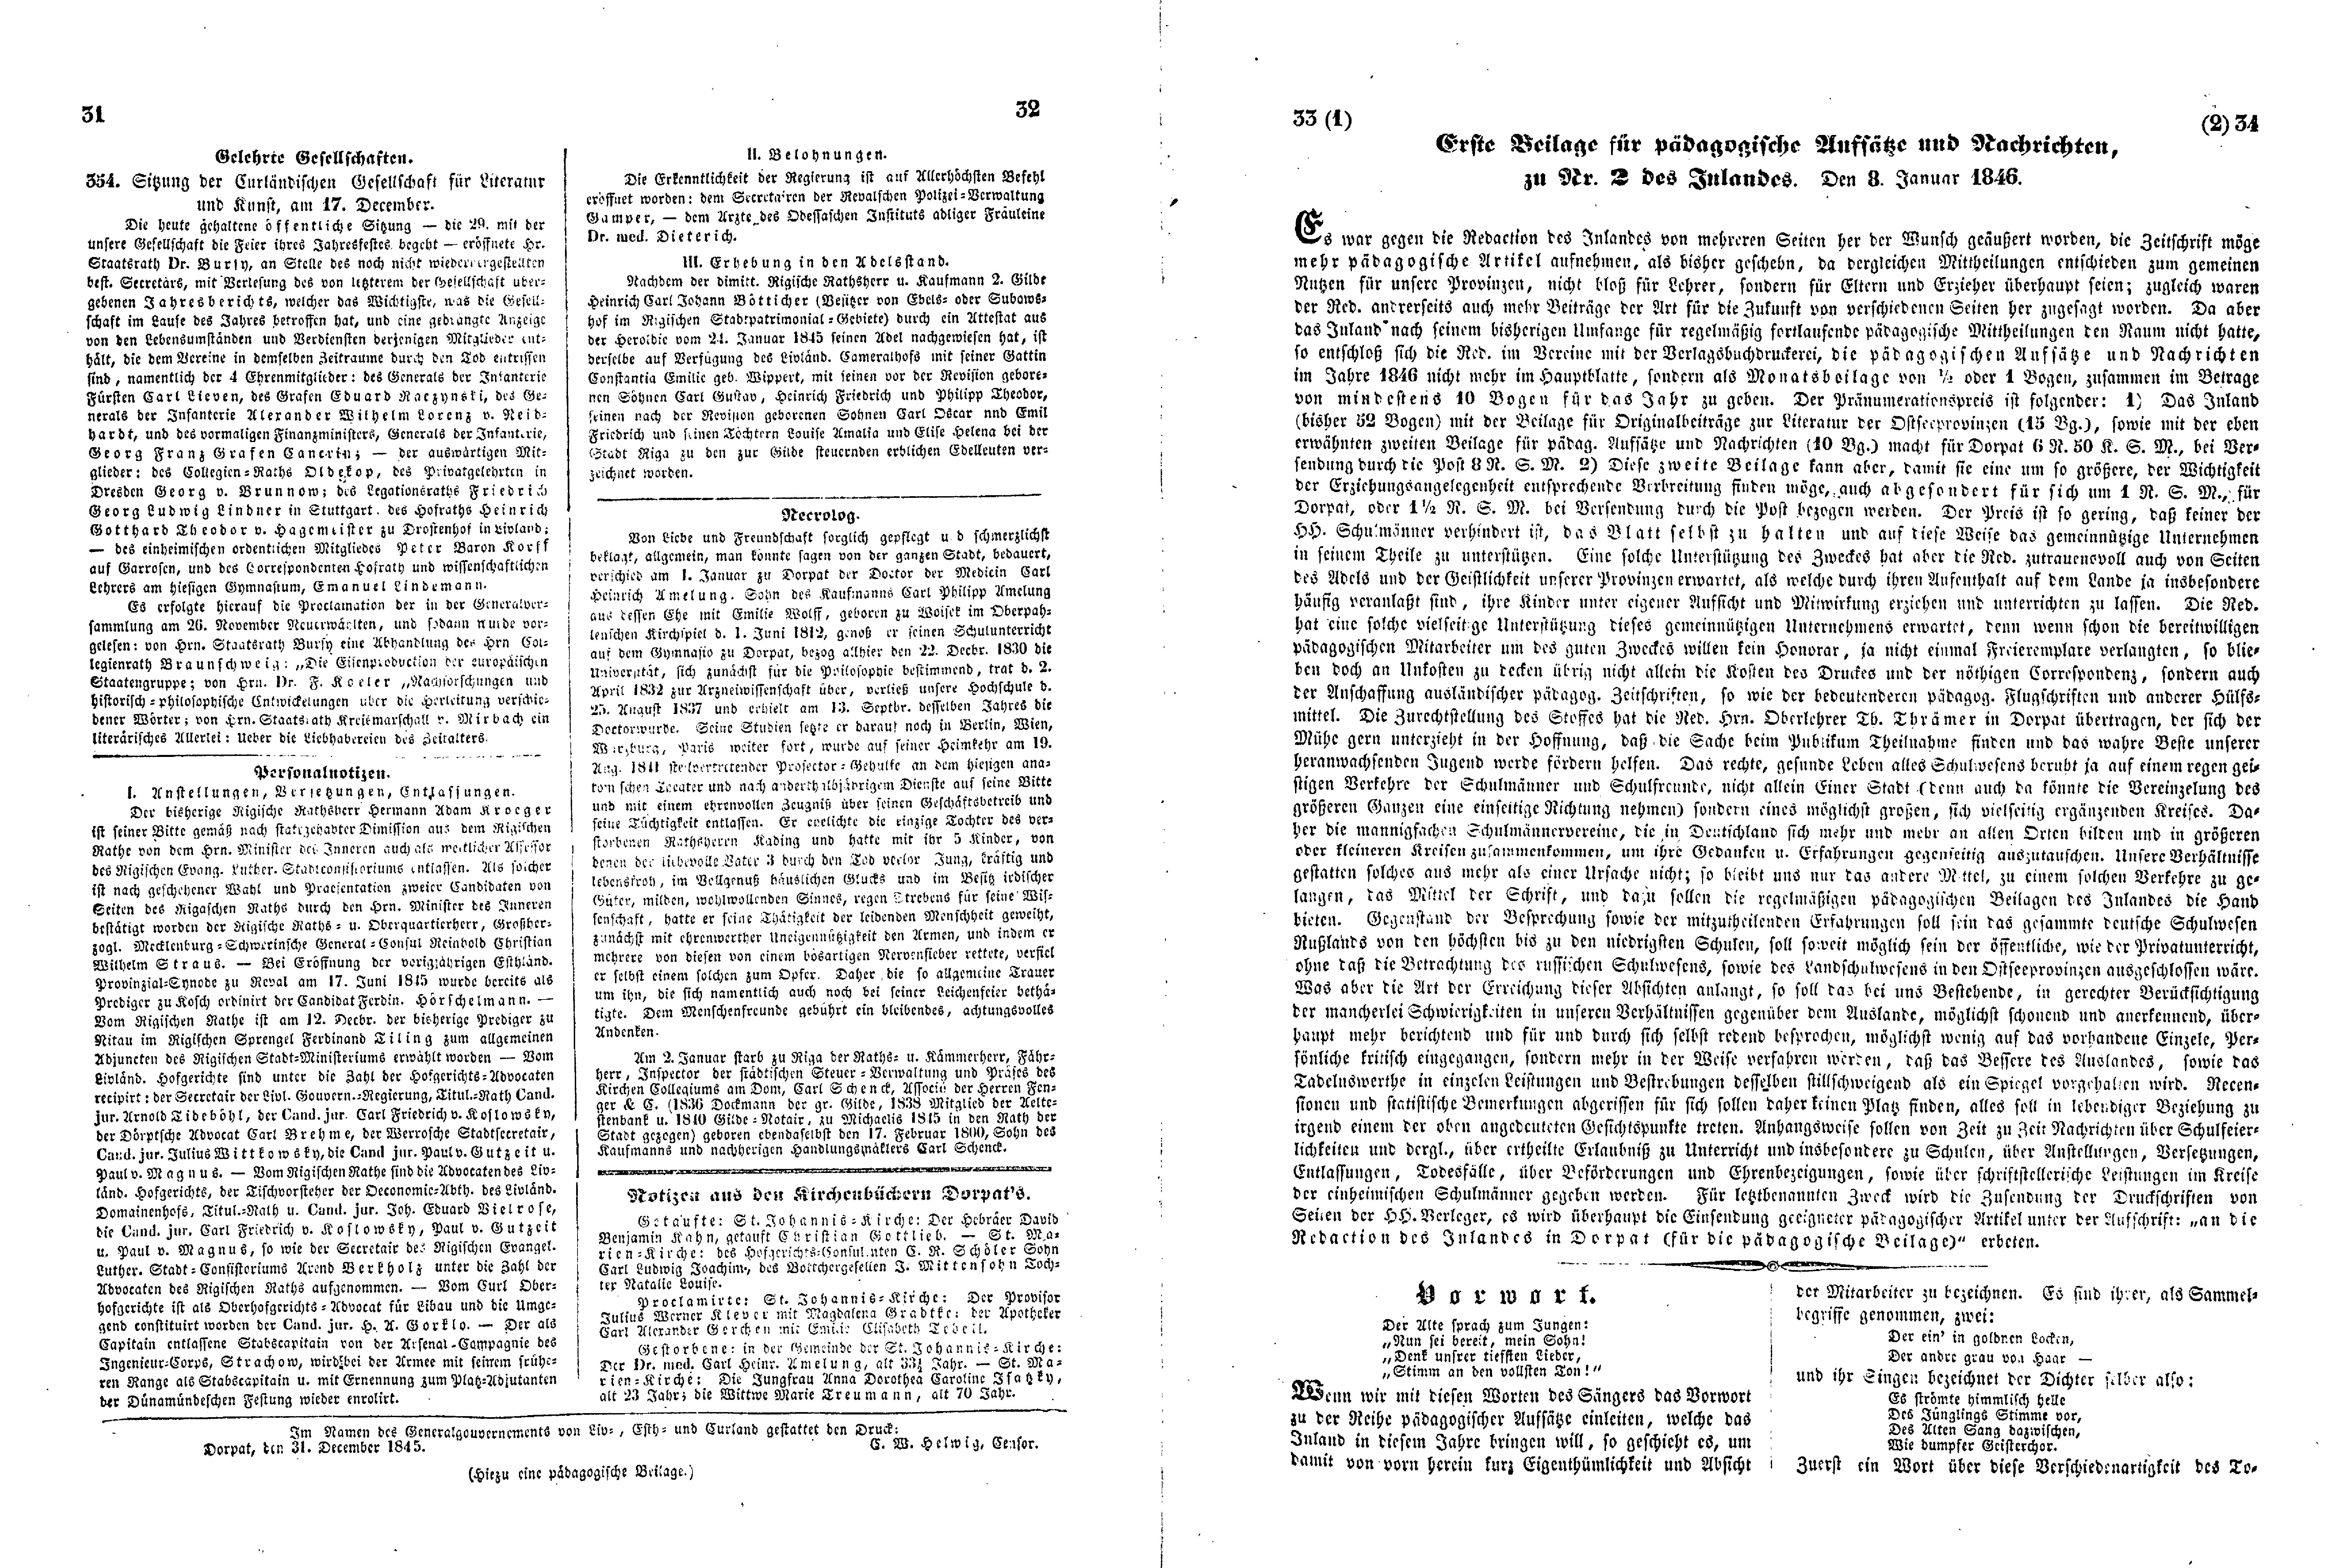 Das Inland [11] (1846) | 13. (31-34) Haupttext